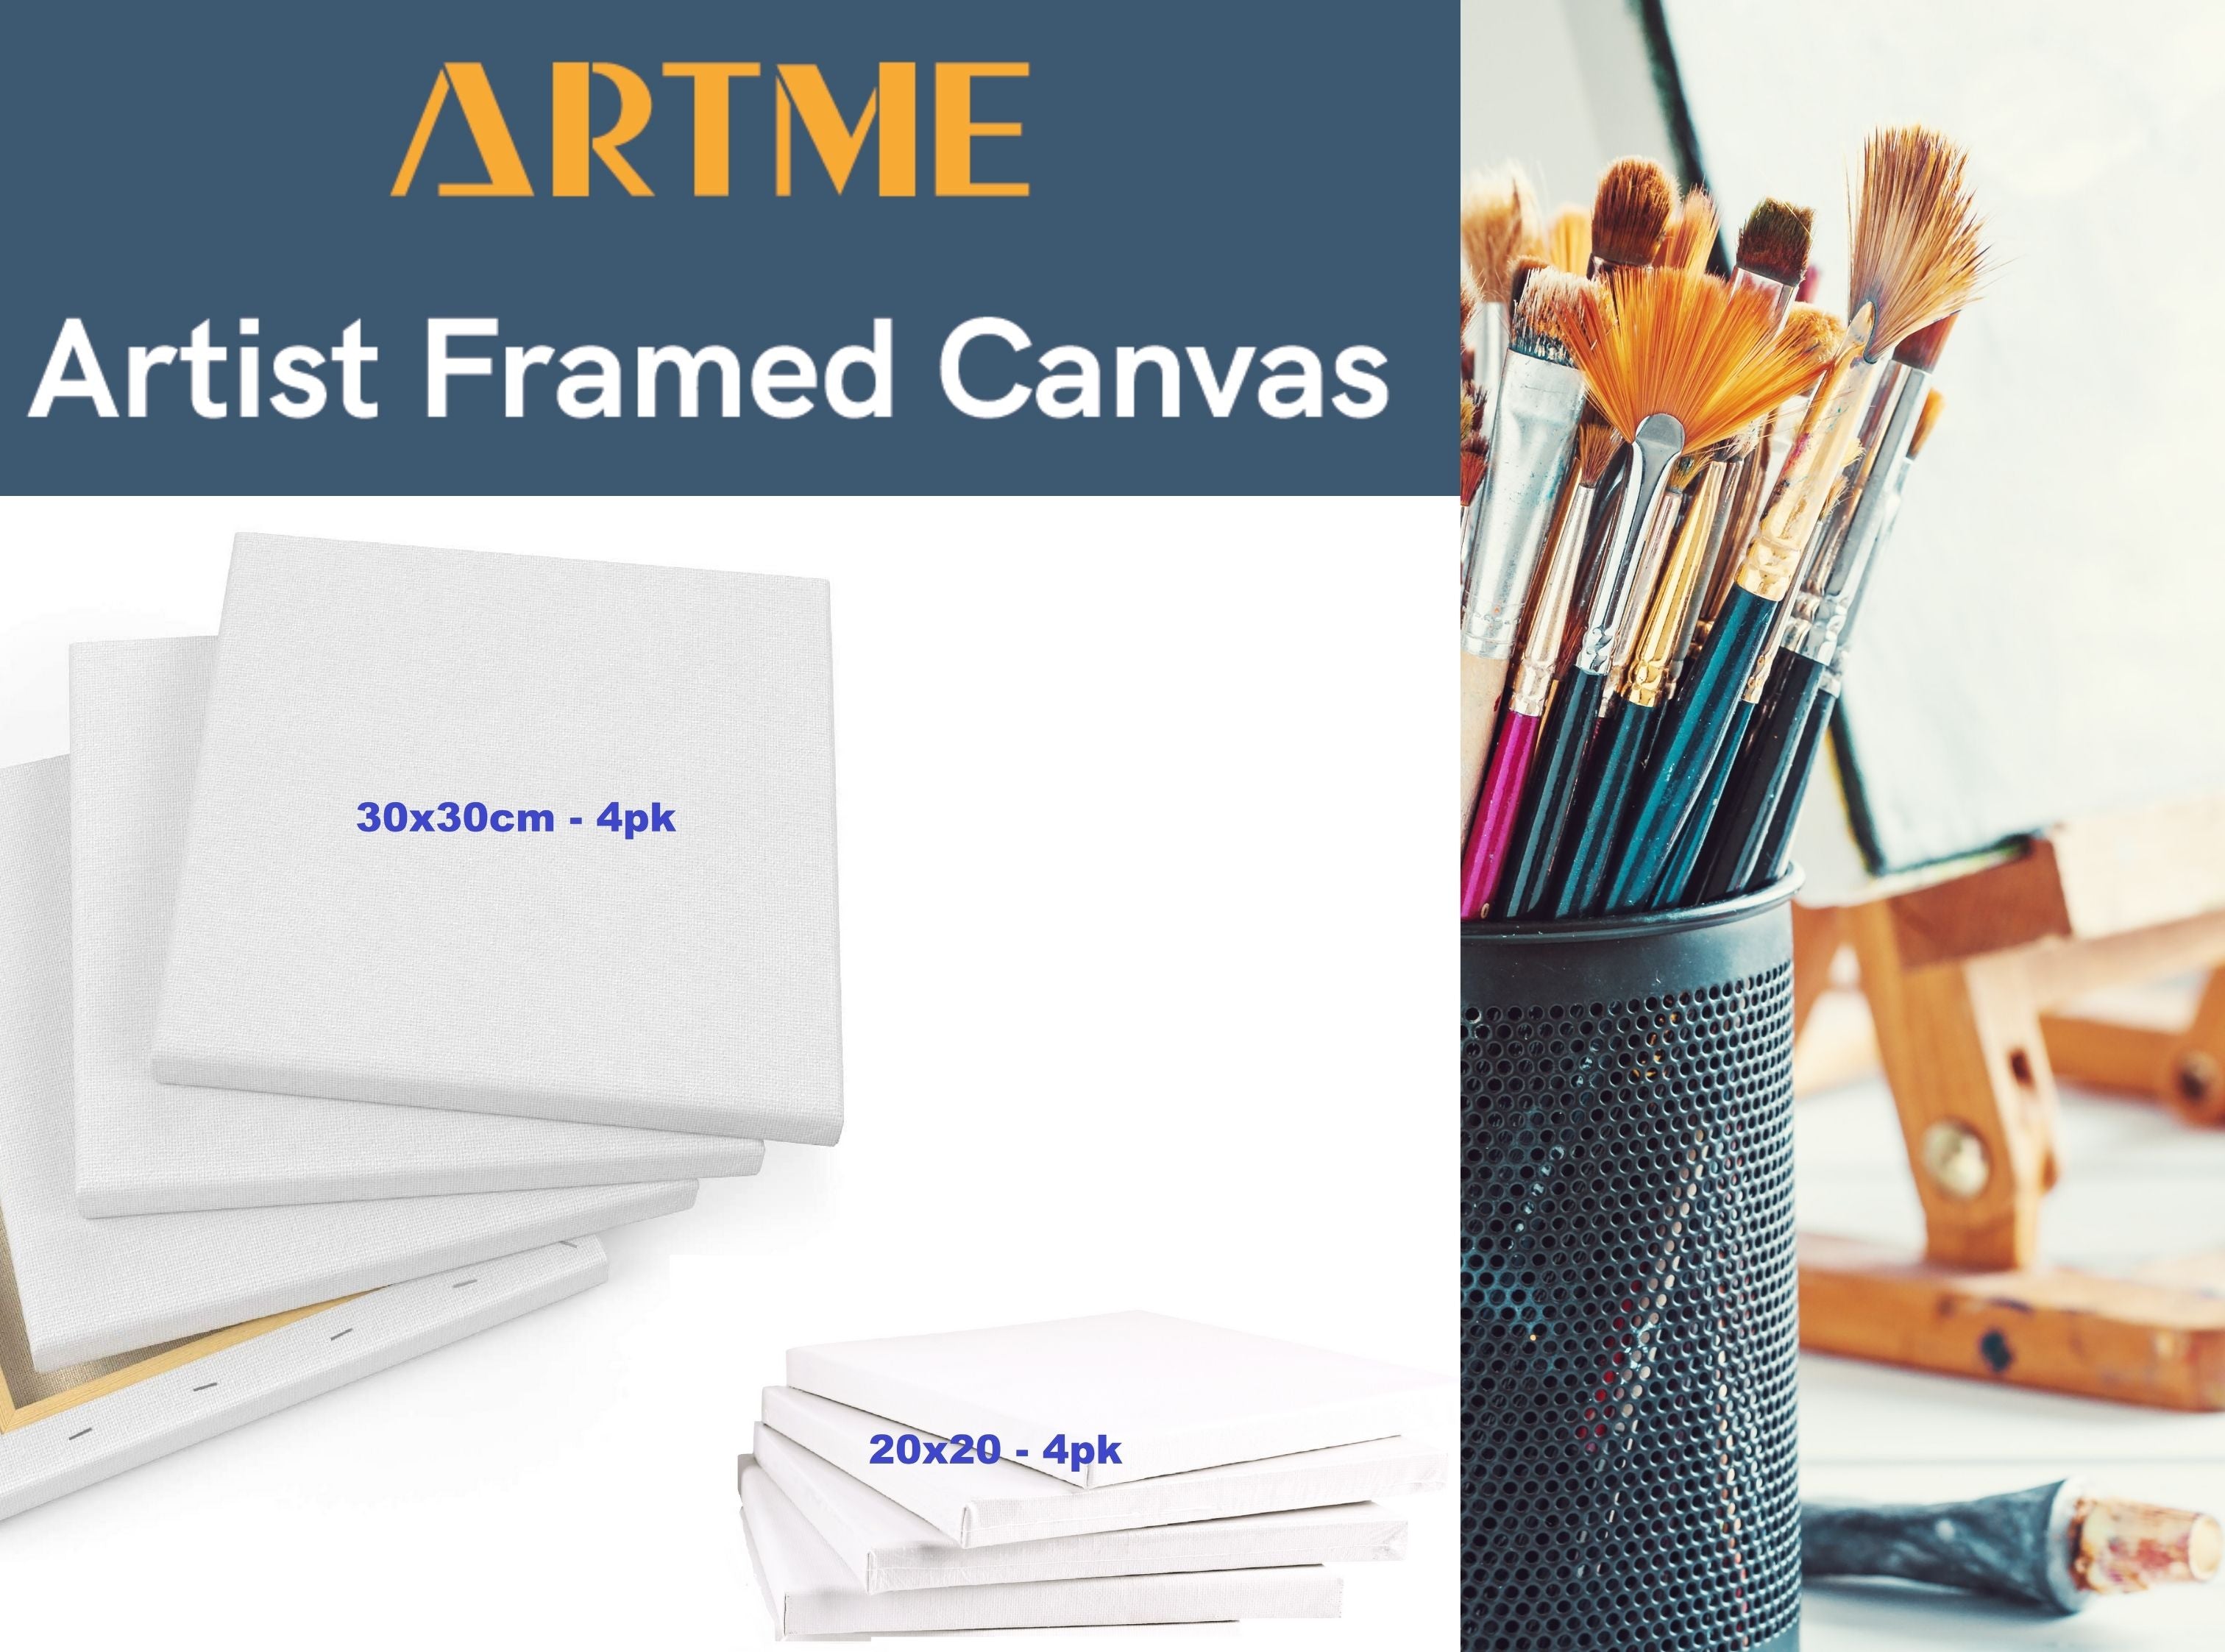 Artme Artist Framed Canvas 8pcs Mixed Size (20x30cm-4pk, 30x30cm-4pk)